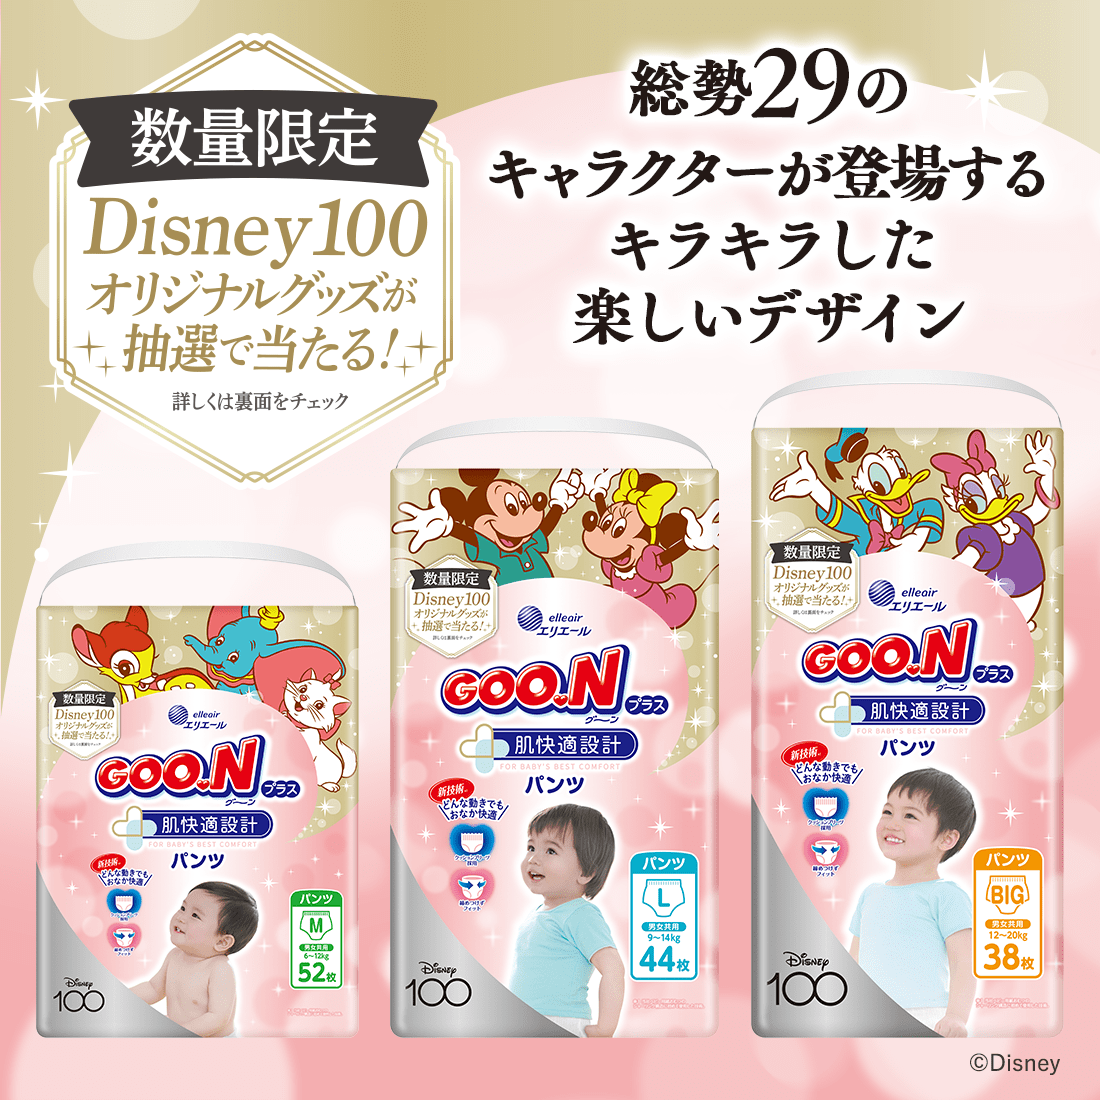 Disney100 オリジナルデザイン品